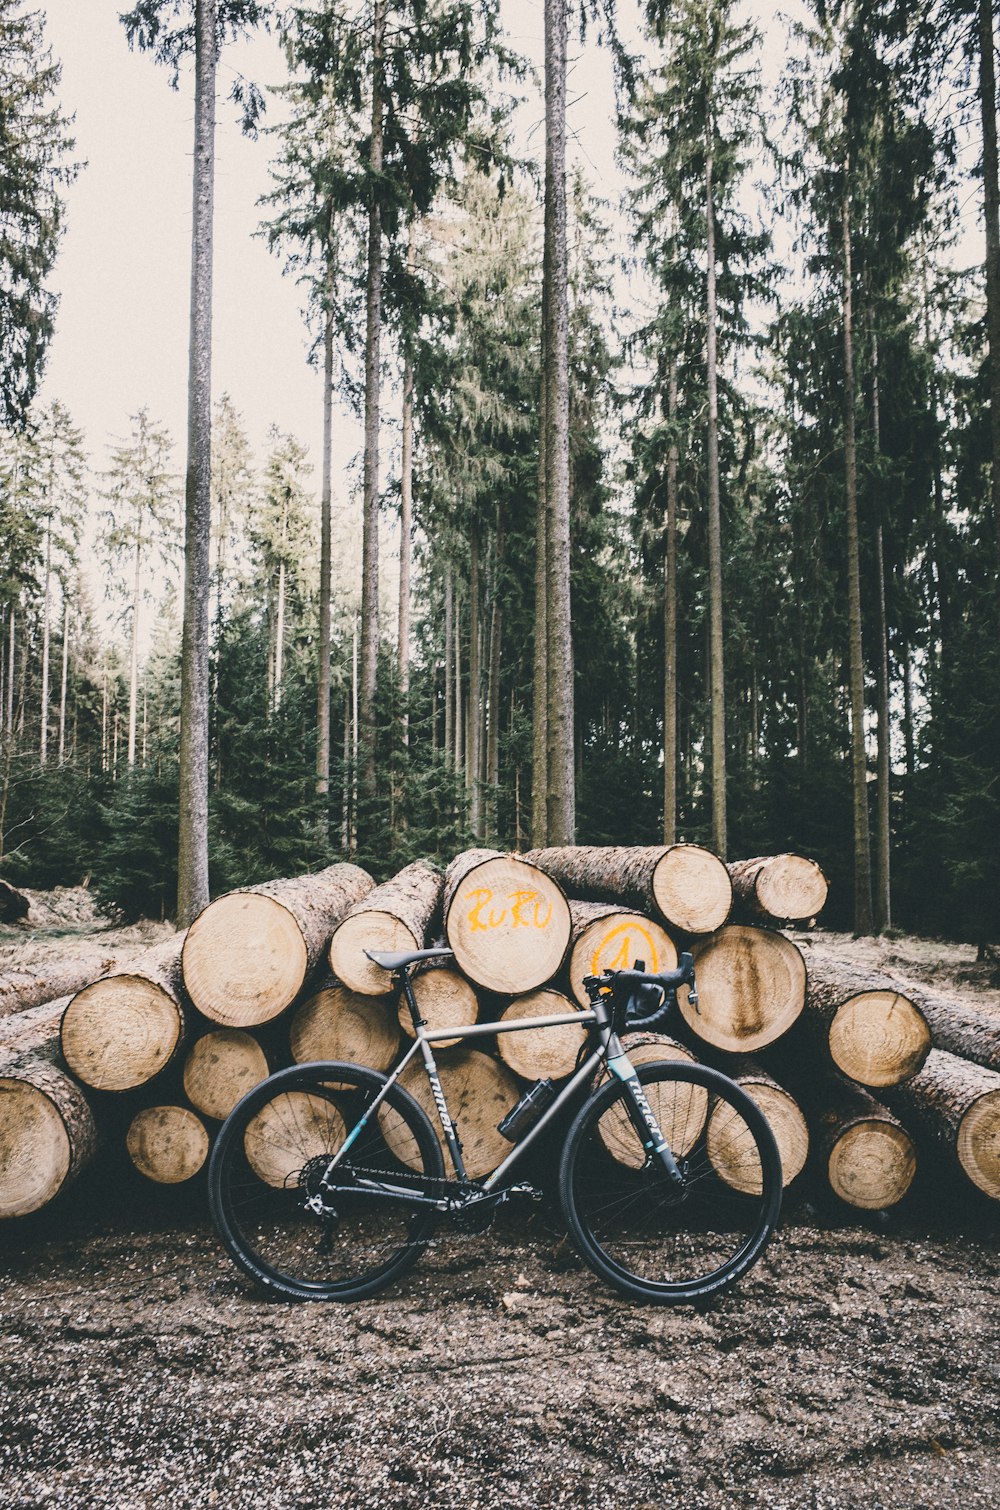 gray road bike leaning on tree logs